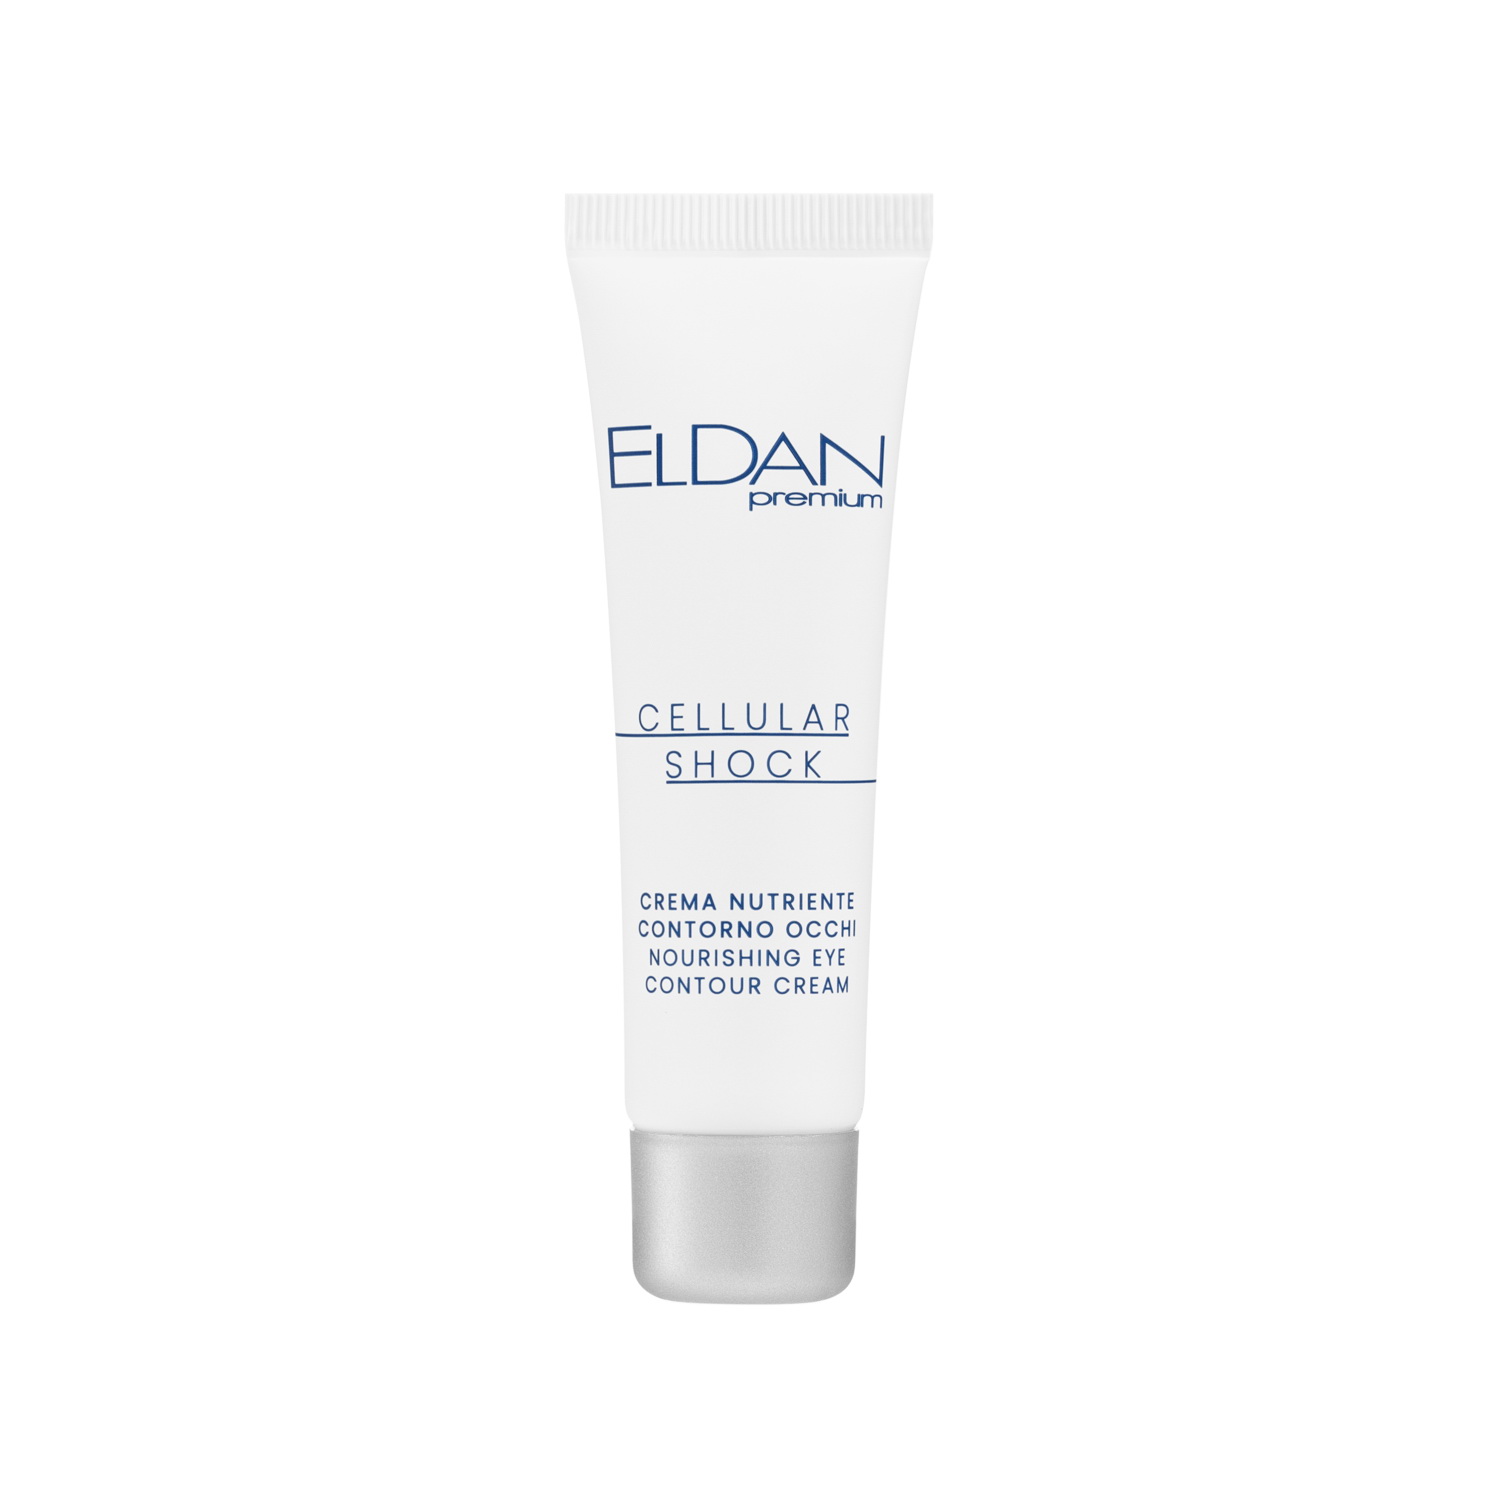 Крем для глаз ELDAN Cosmetics Premium Cellular Shock для увлажнения и питания, 30 мл eldan средство для упругости и объема губ premium 15 мл